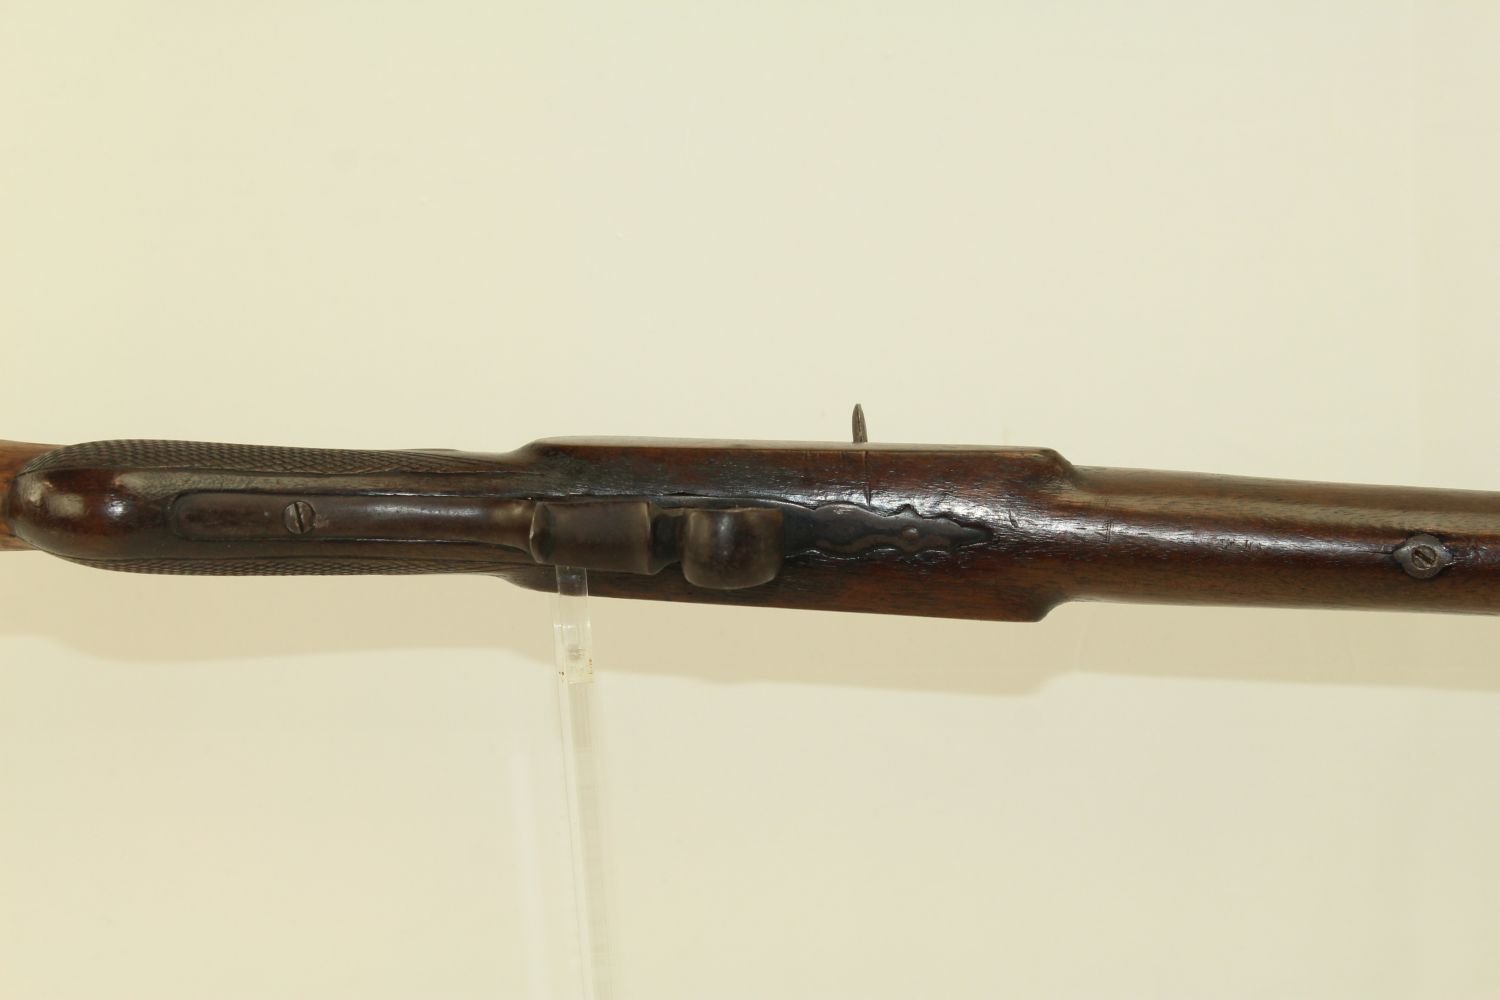 Belgian Flobert Type Rifle C R Antique Ancestry Guns